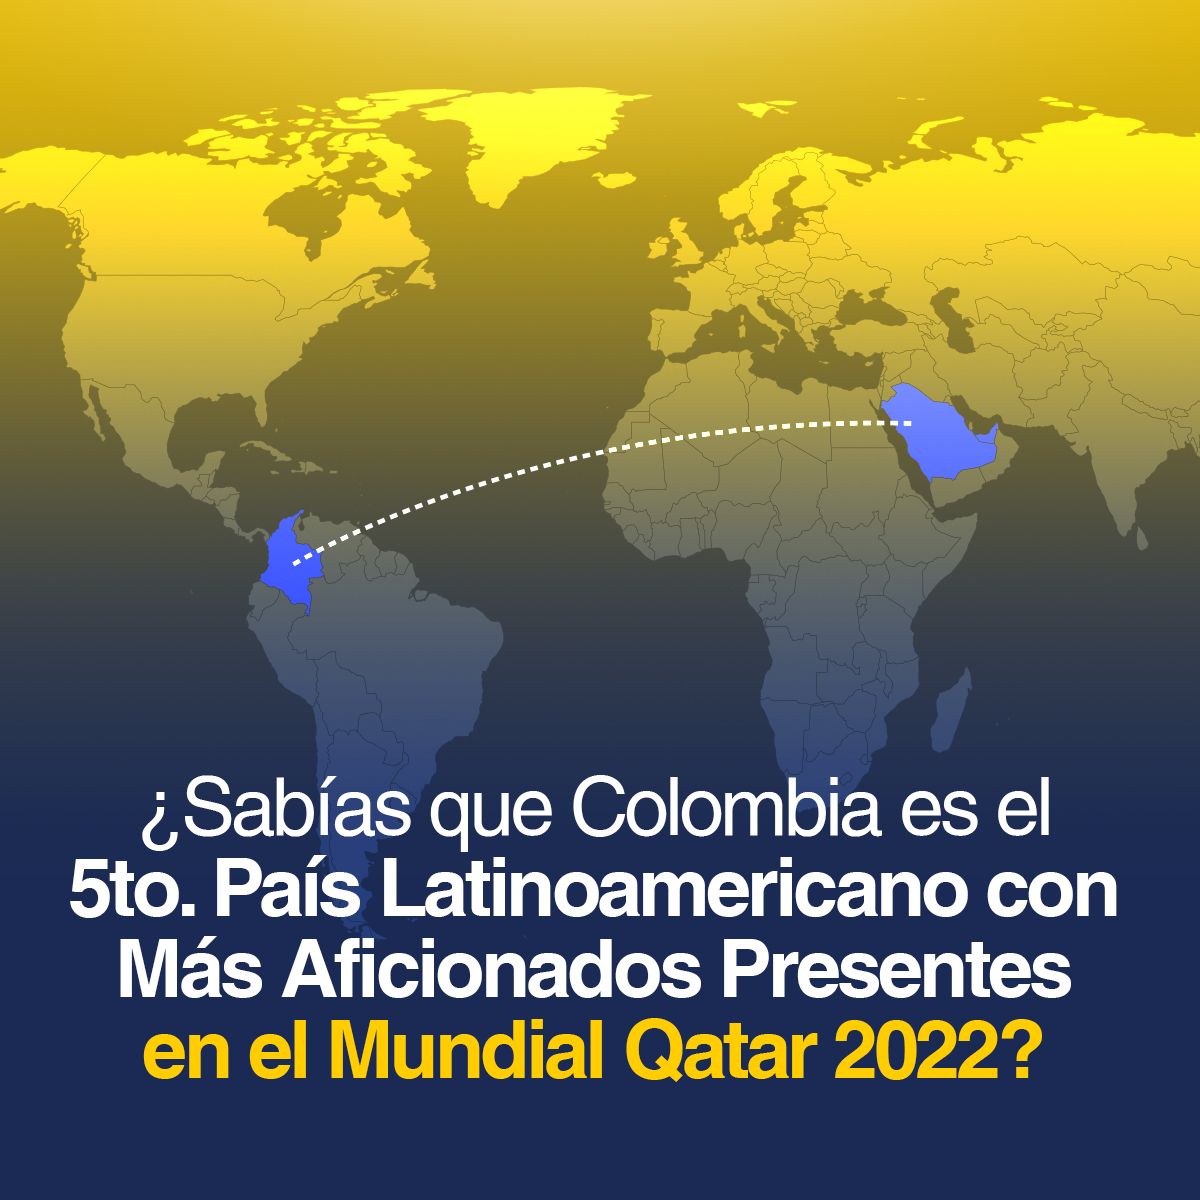 ¿Sabías que Colombia es el 5to. País Latinoamericano con Más Aficionados Presentes en el Mundial Qatar 2022?